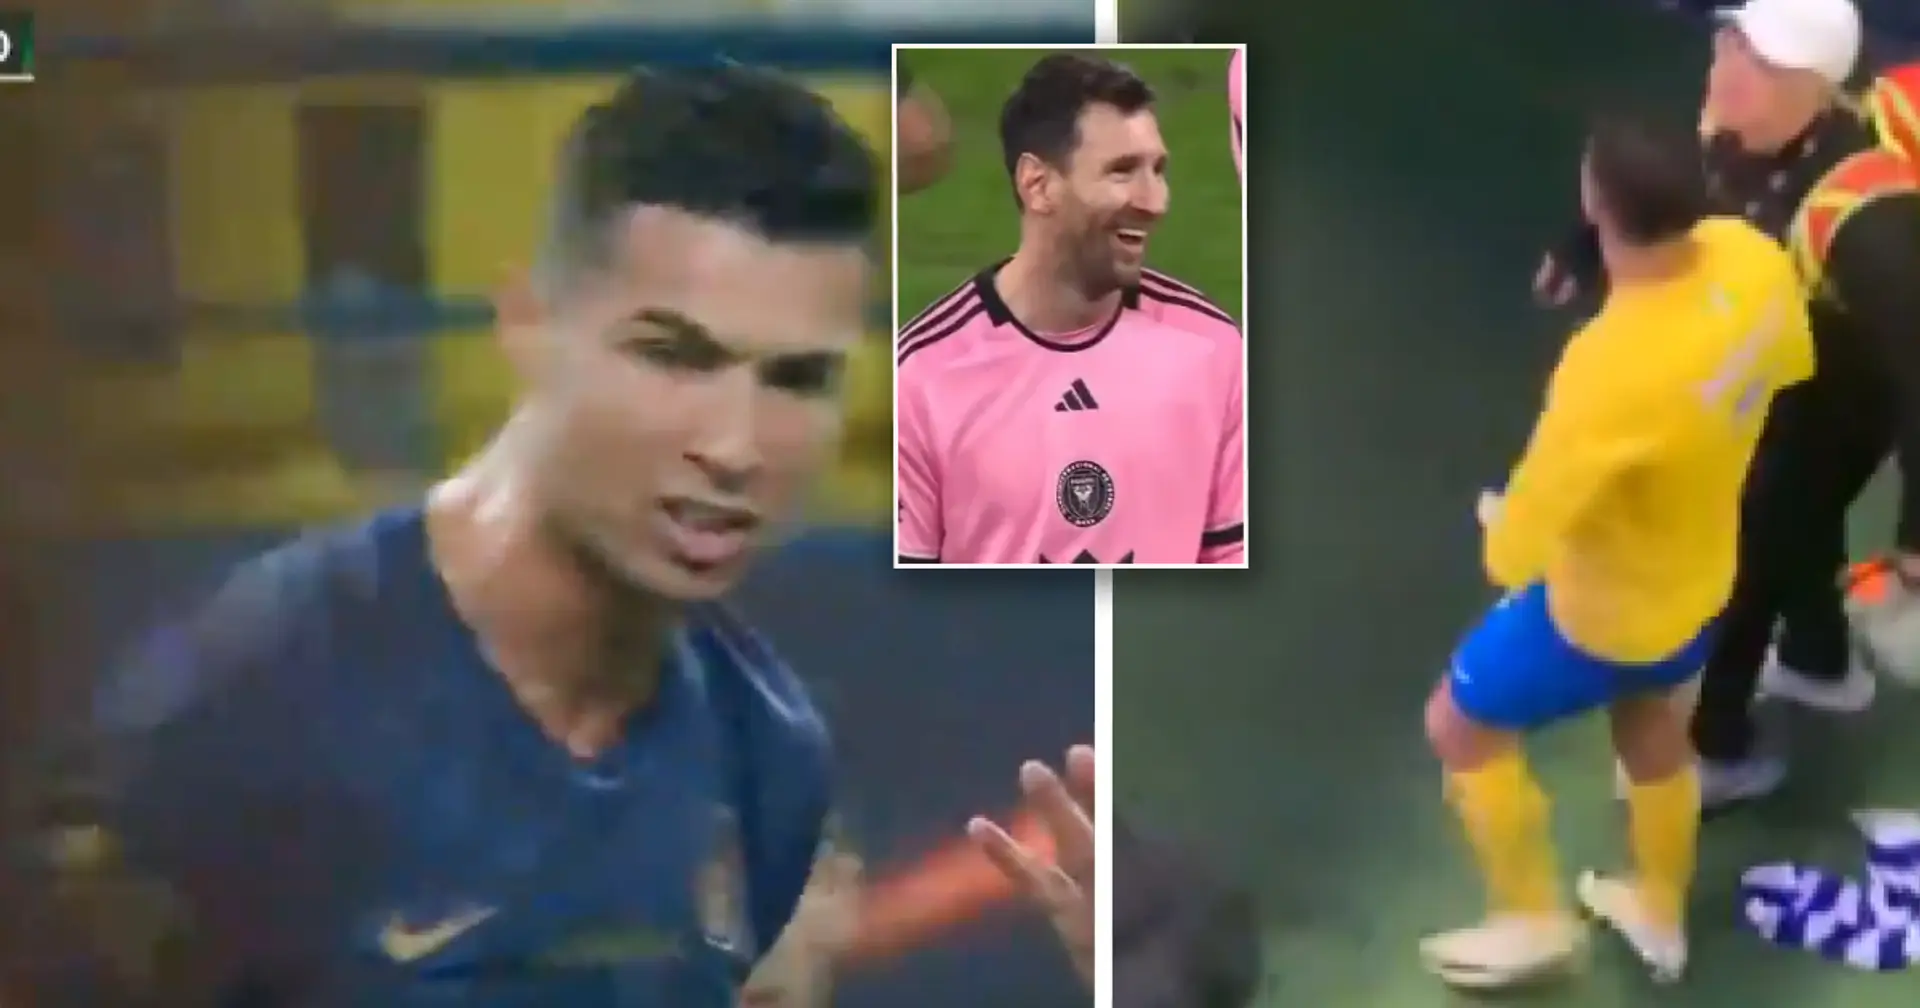 Les fans choqués par le comportement contraire à l'éthique de Ronaldo après les chants répétés "Messi" de la foule saoudienne